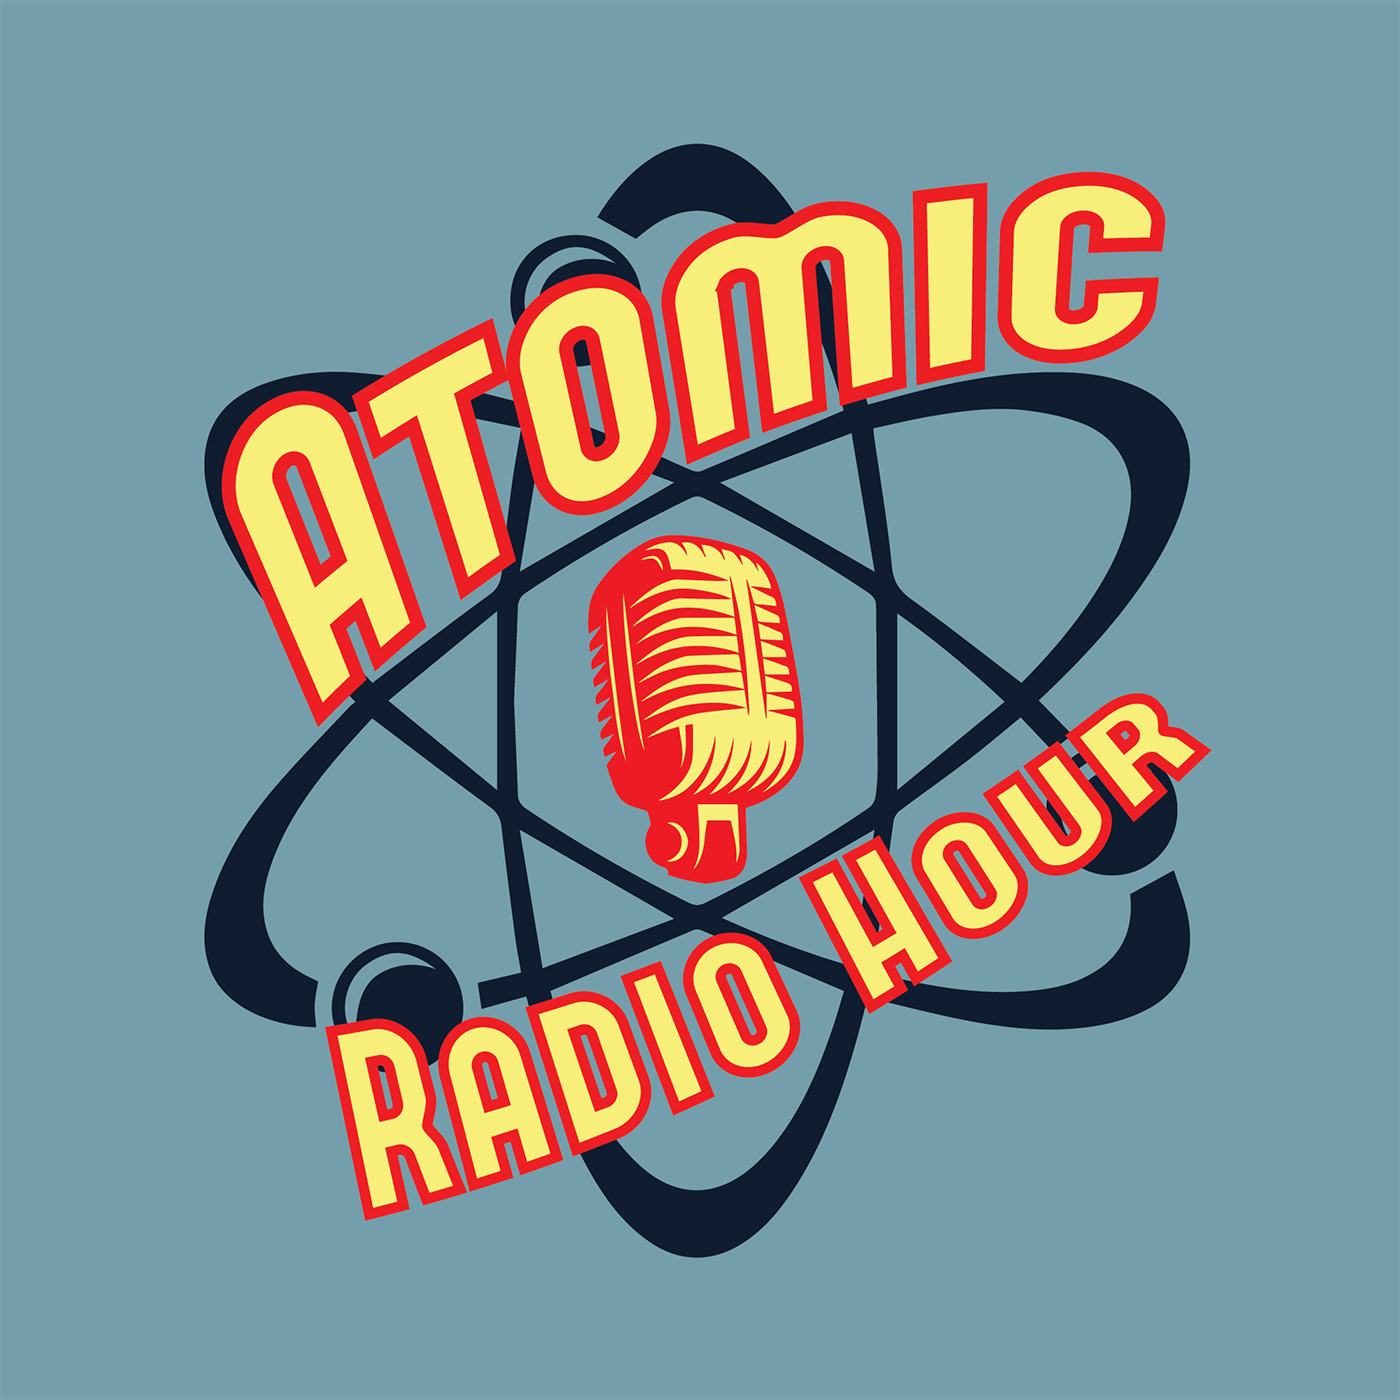 Atomic Radio Hour - Episode 141 - Classical Jeff Bridges